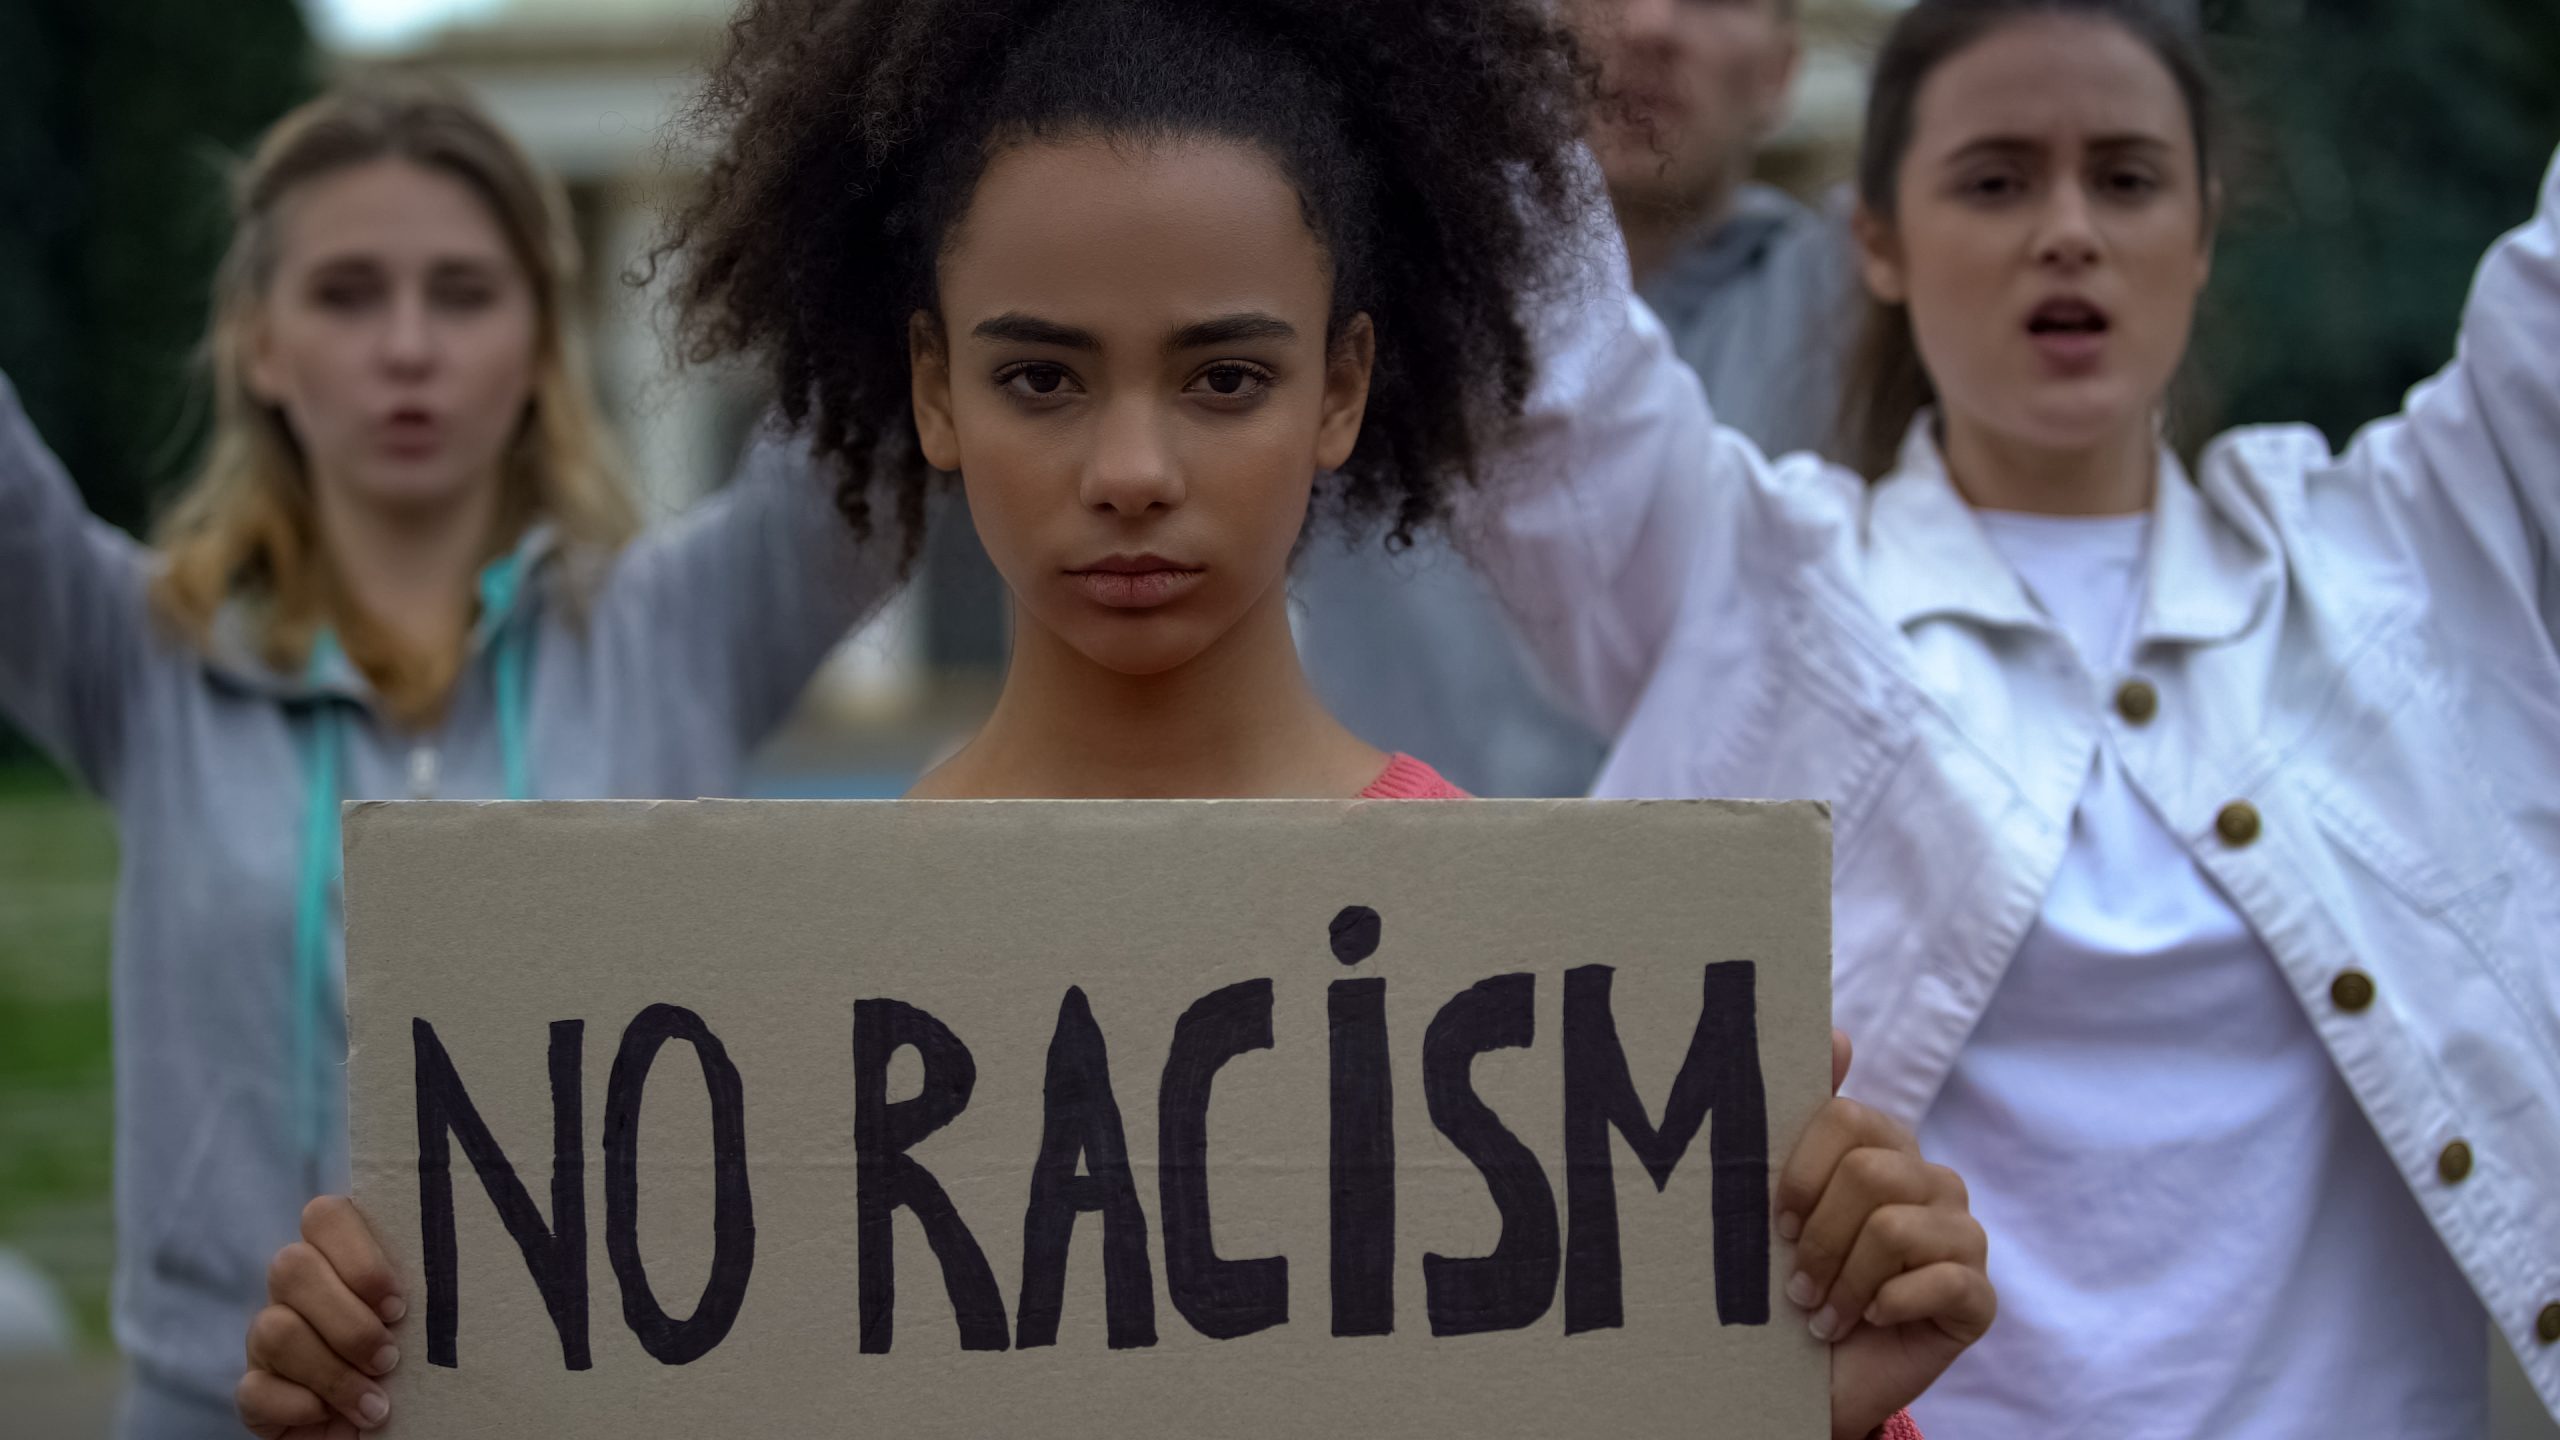 Racism – accident prone?